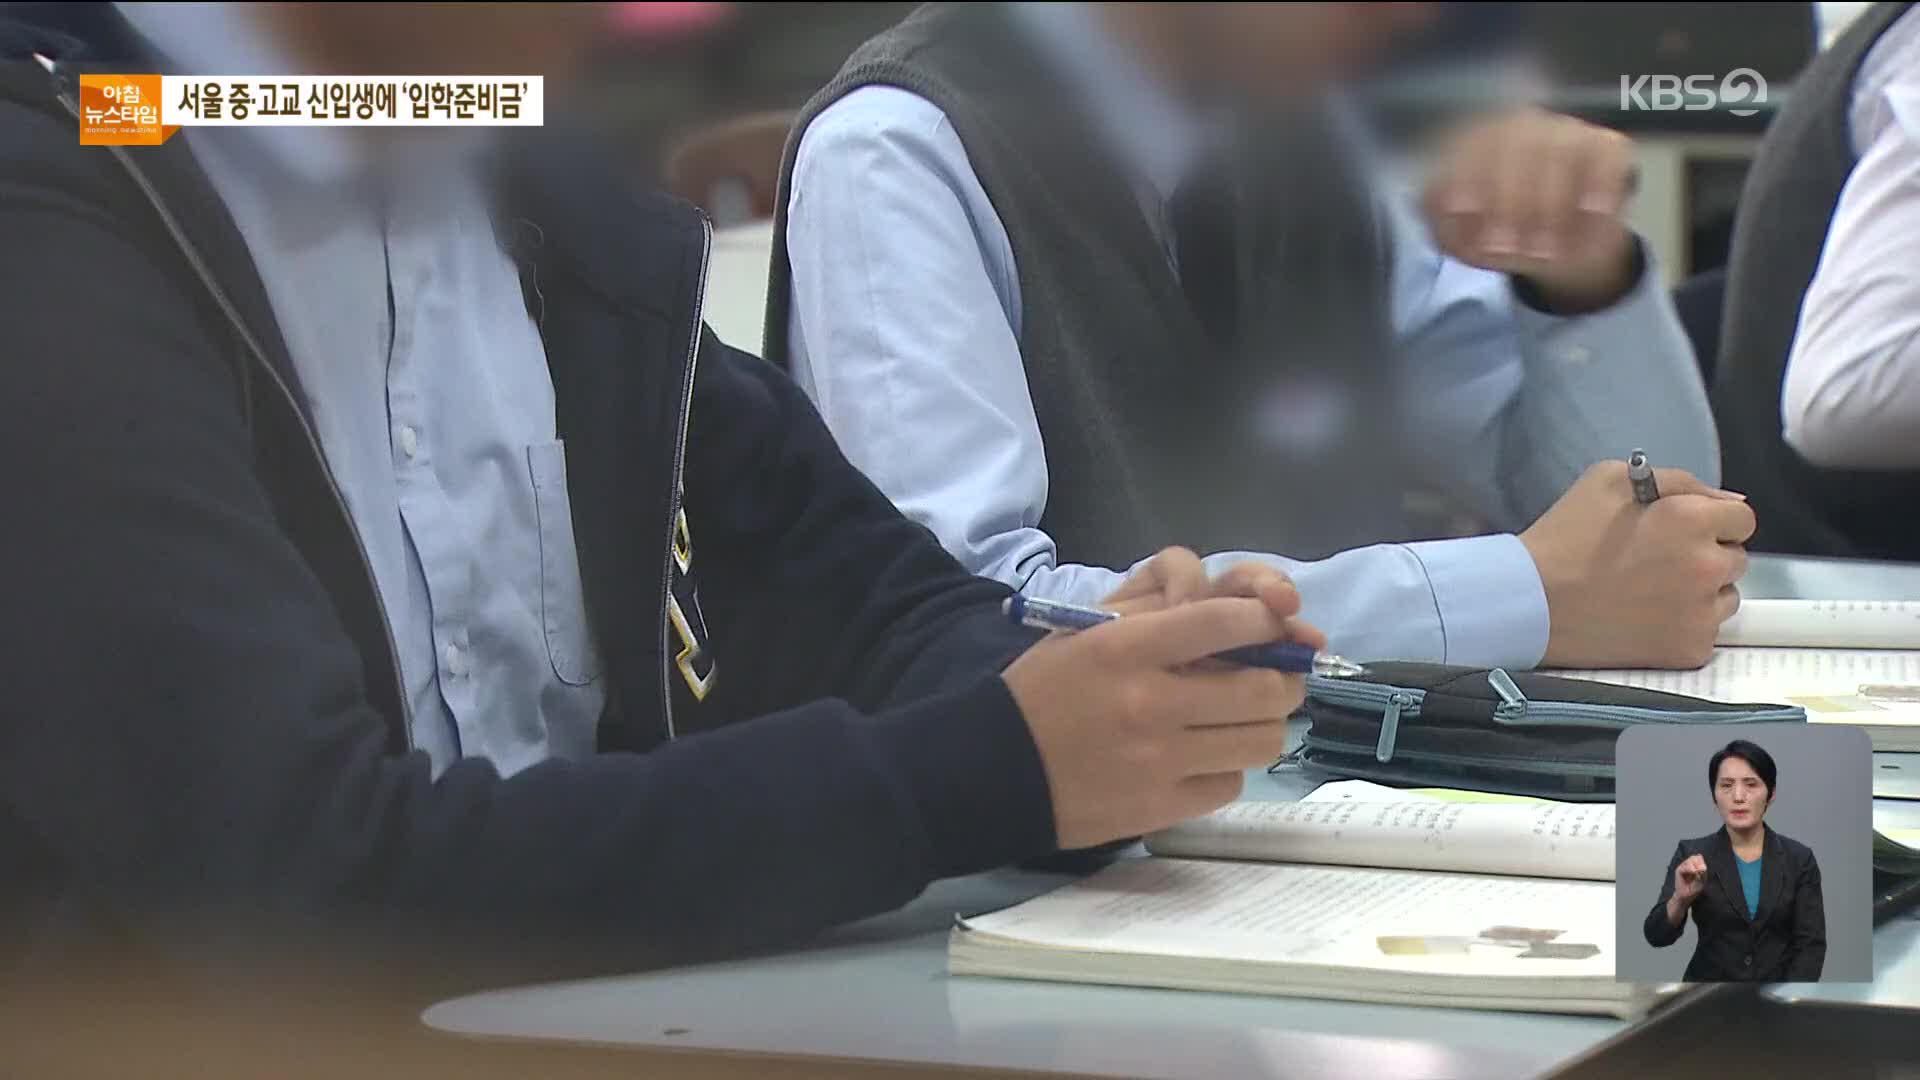 서울 중·고교 신입생, 내년부터 누구나 ‘입학준비금’ 30만 원 받는다